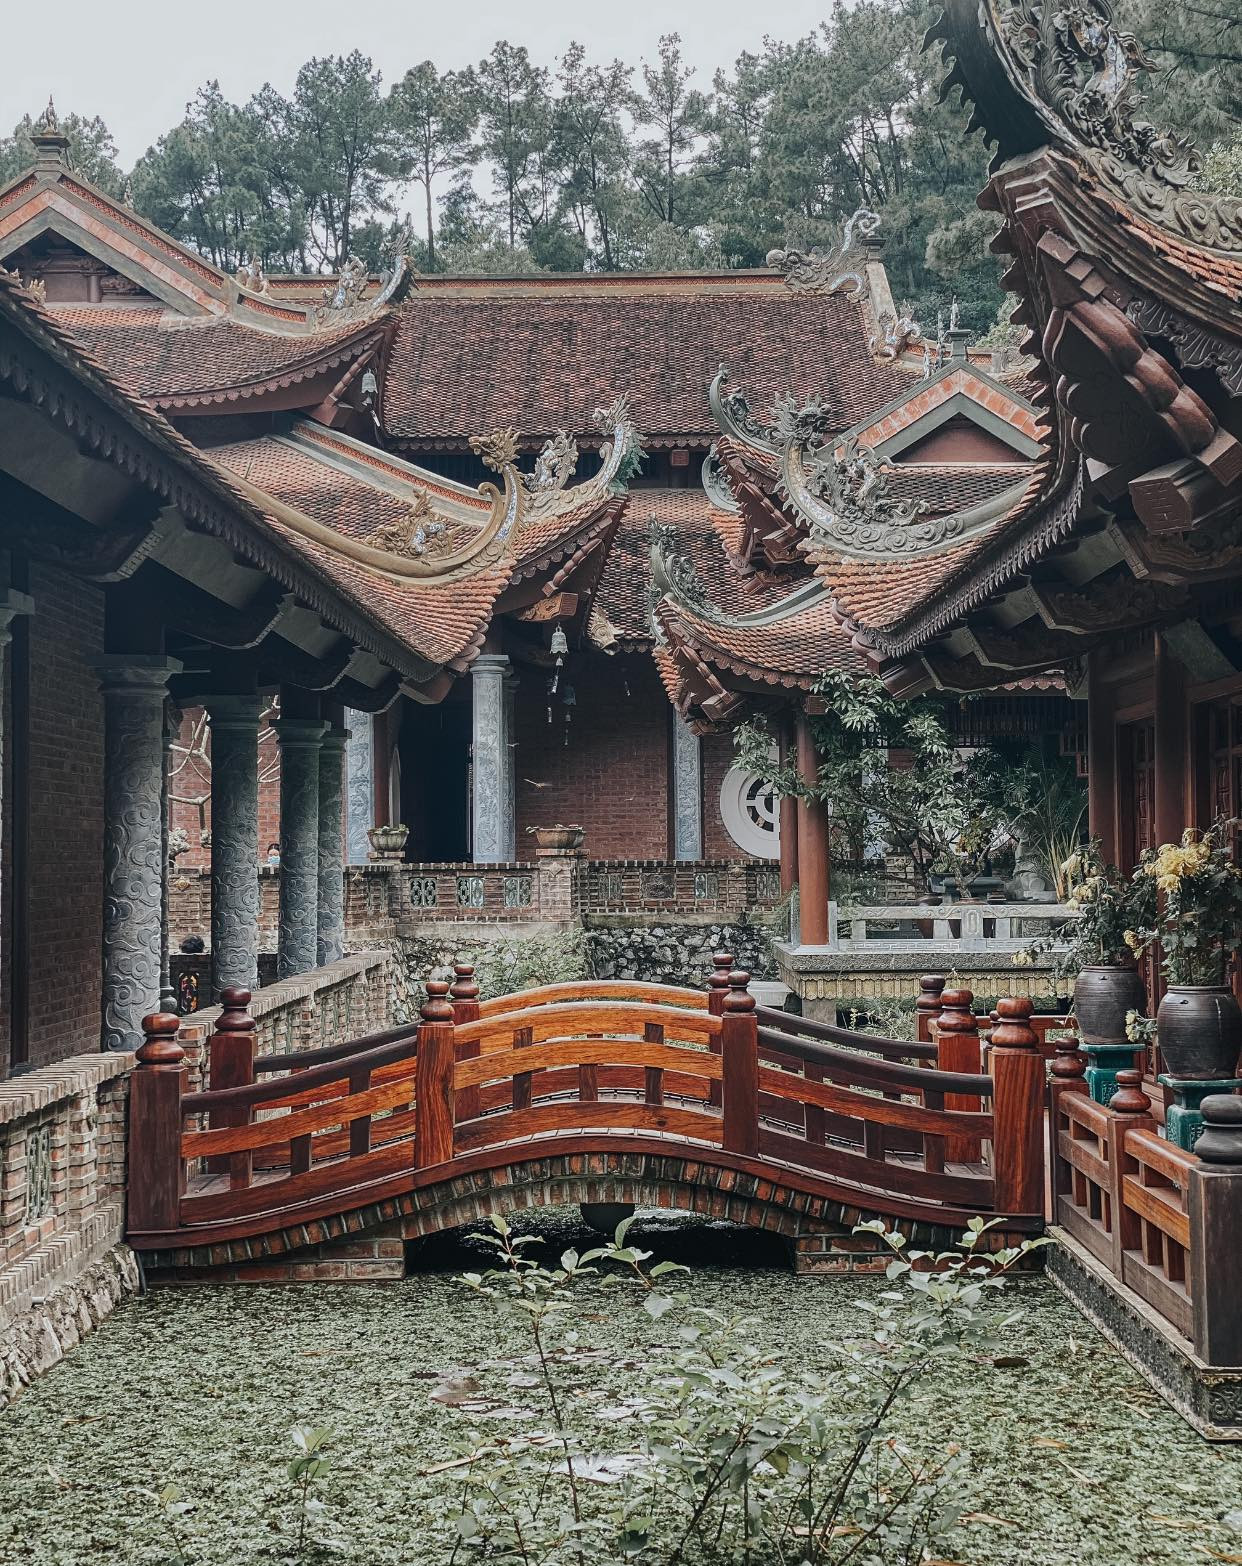 Tỉnh nhỏ thứ 2 Việt Nam được giải thưởng du lịch quốc tế, có nhiều chùa đẹp, cách Hà Nội chưa tới 100km - Ảnh 8.